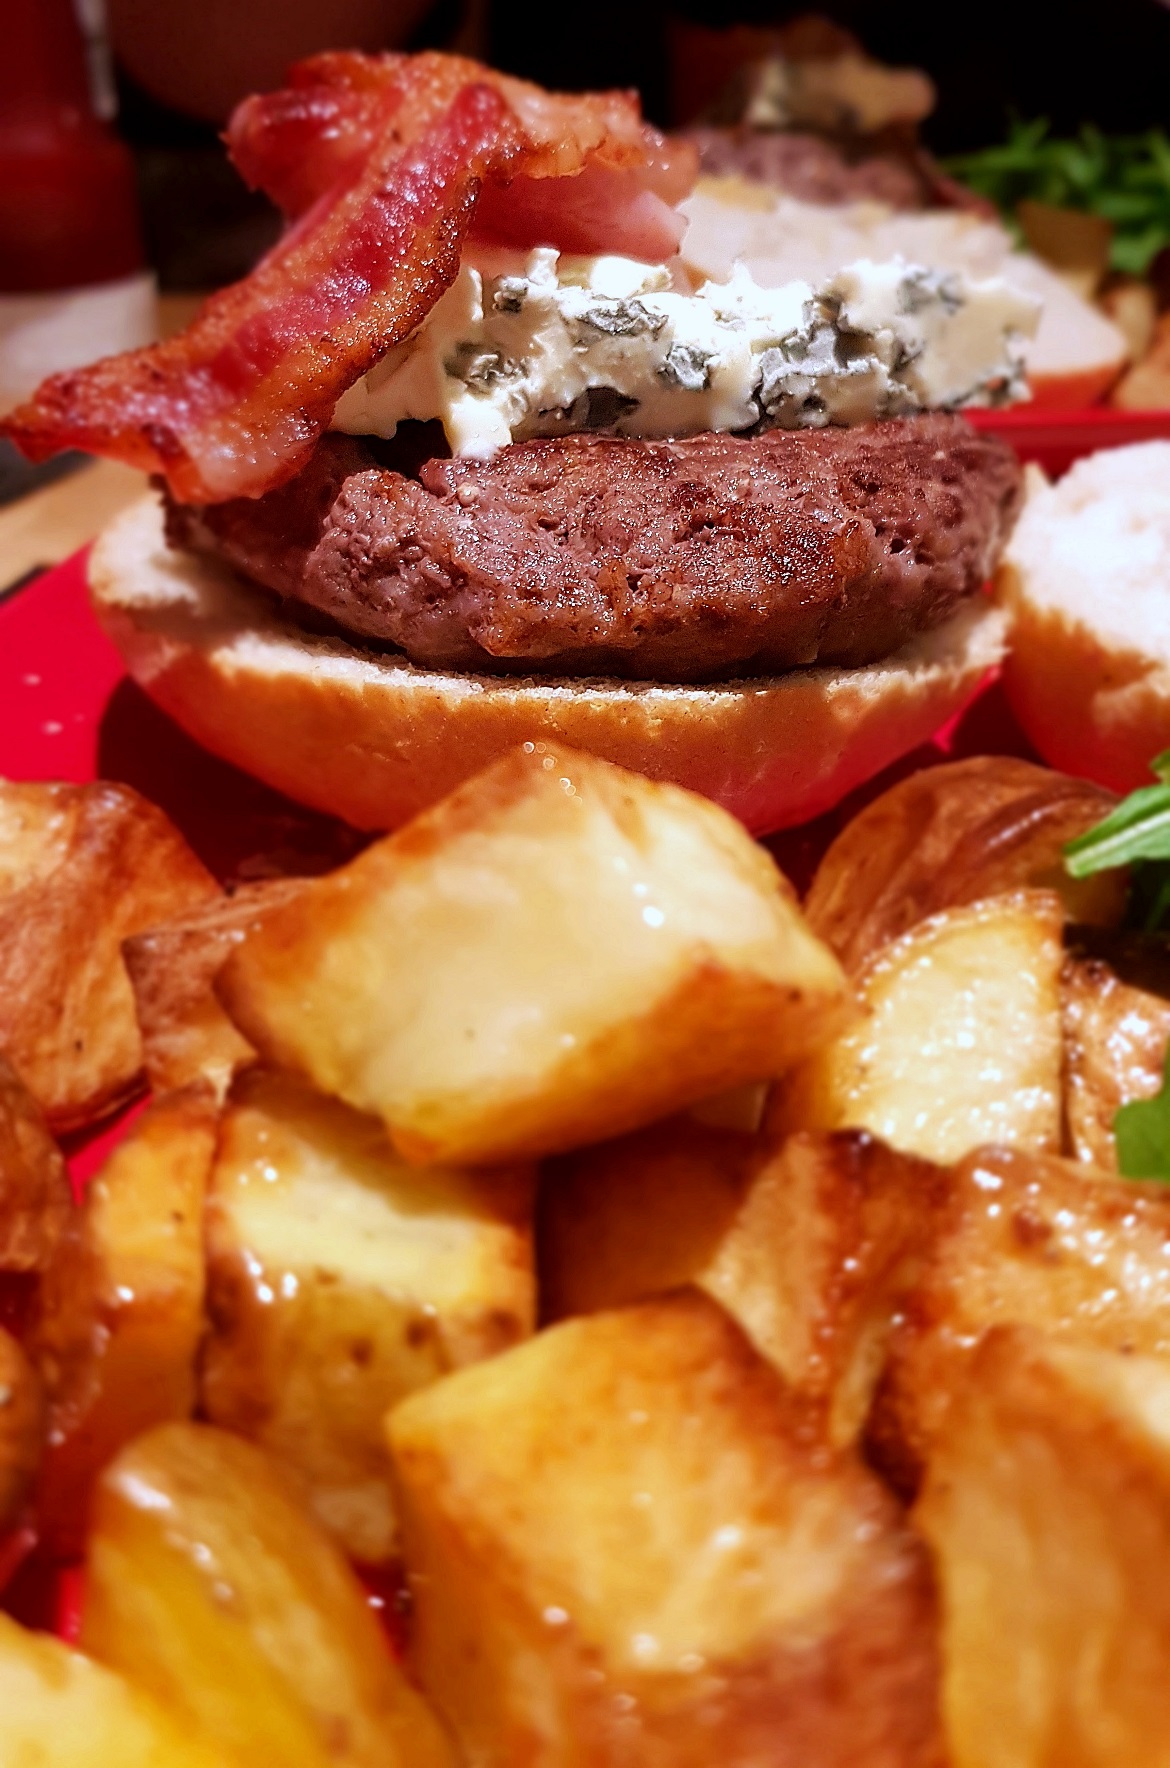 Gourmet burgers - November Monthly Recap by BeckyBecky Blogs